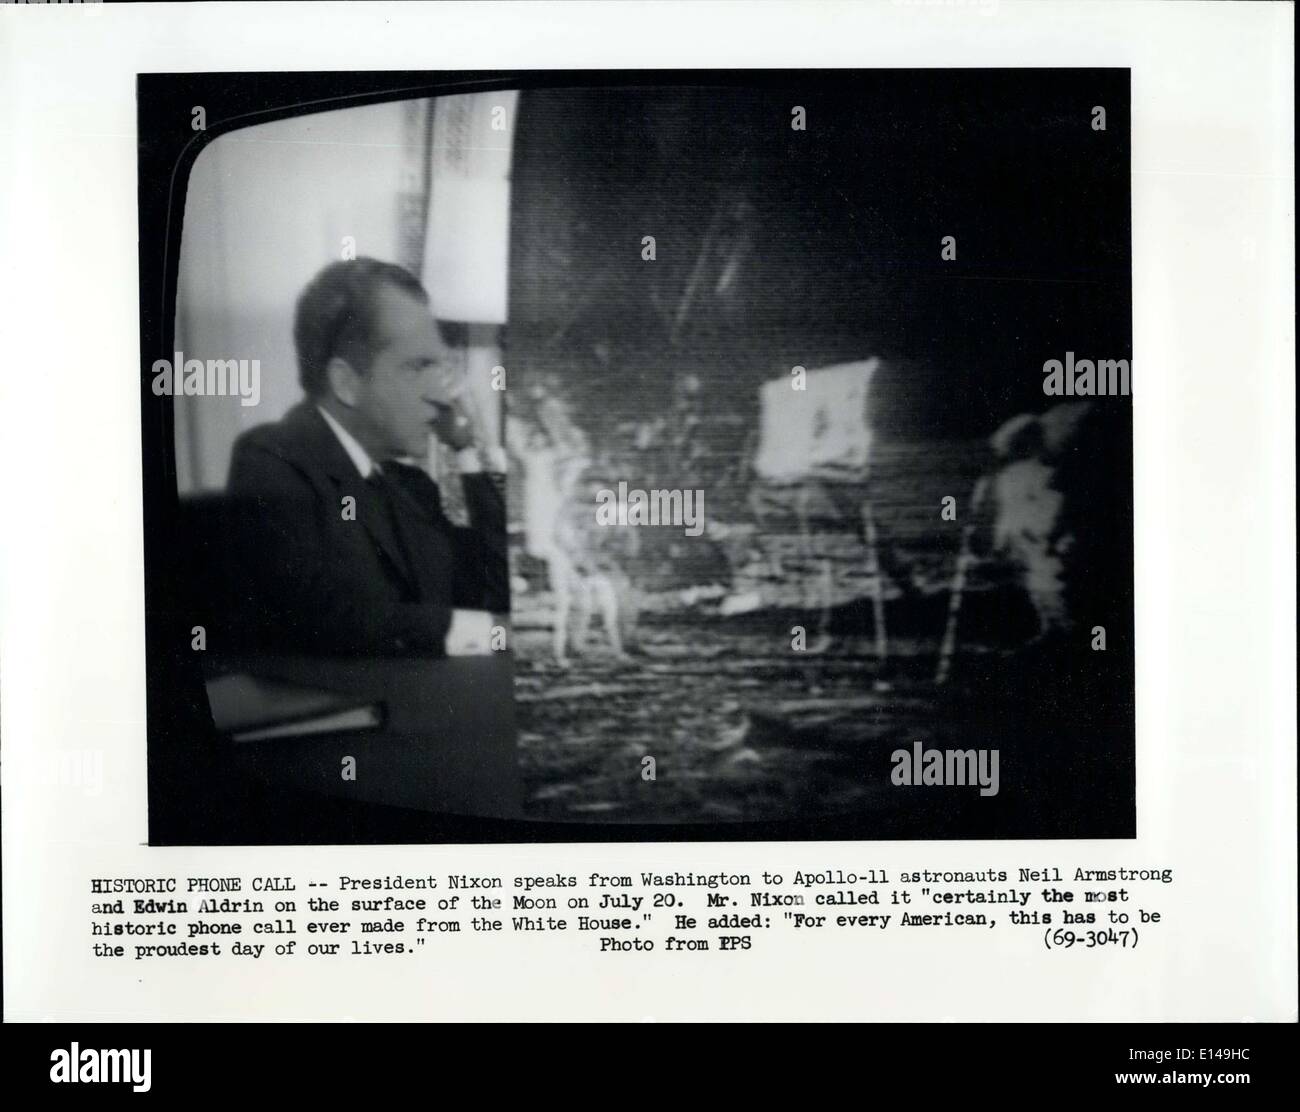 Le 17 avril 2012 - Appel téléphonique Historique : Le président Nixon parle de Washington pour Apollo-11 les astronautes Neil Armstrong et Edwin Aldrin sur la surface de la lune le 20 juillet. M. Nixon a appelé il a certainement du plus ancien appel jamais faits à partir de la Maison Blanche. Il a ajouté ; ''American, ce doit être le plus jour de notre vie" Banque D'Images